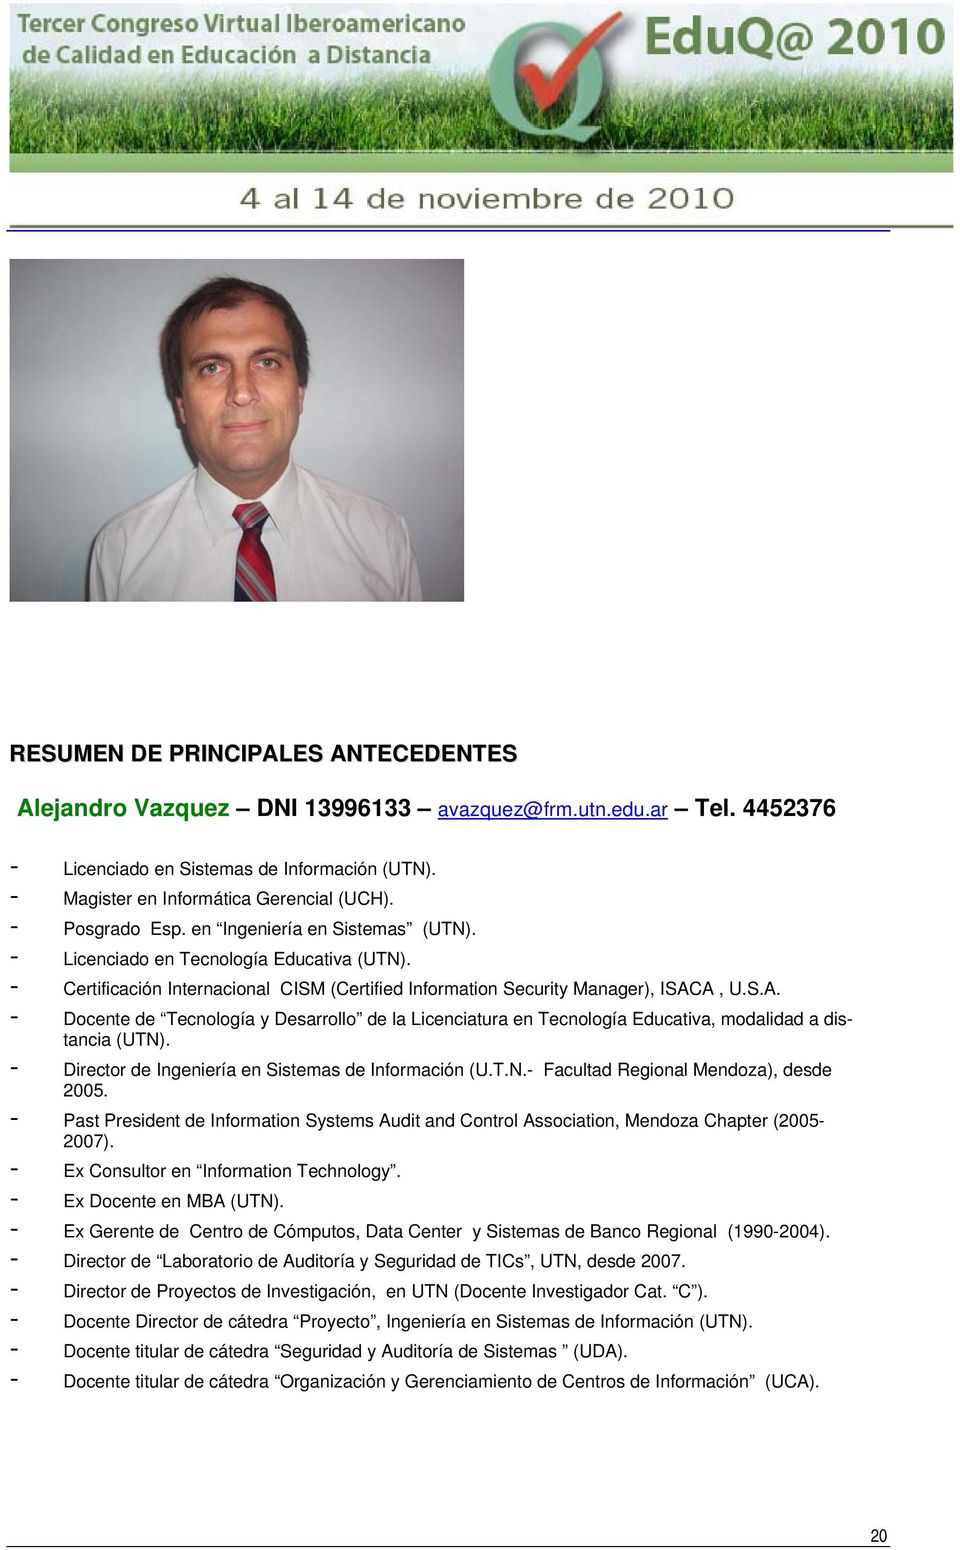 A, U.S.A. - Docente de Tecnología y Desarrollo de la Licenciatura en Tecnología Educativa, modalidad a distancia (UTN). - Director de Ingeniería en Sistemas de Información (U.T.N.- Facultad Regional Mendoza), desde 2005.